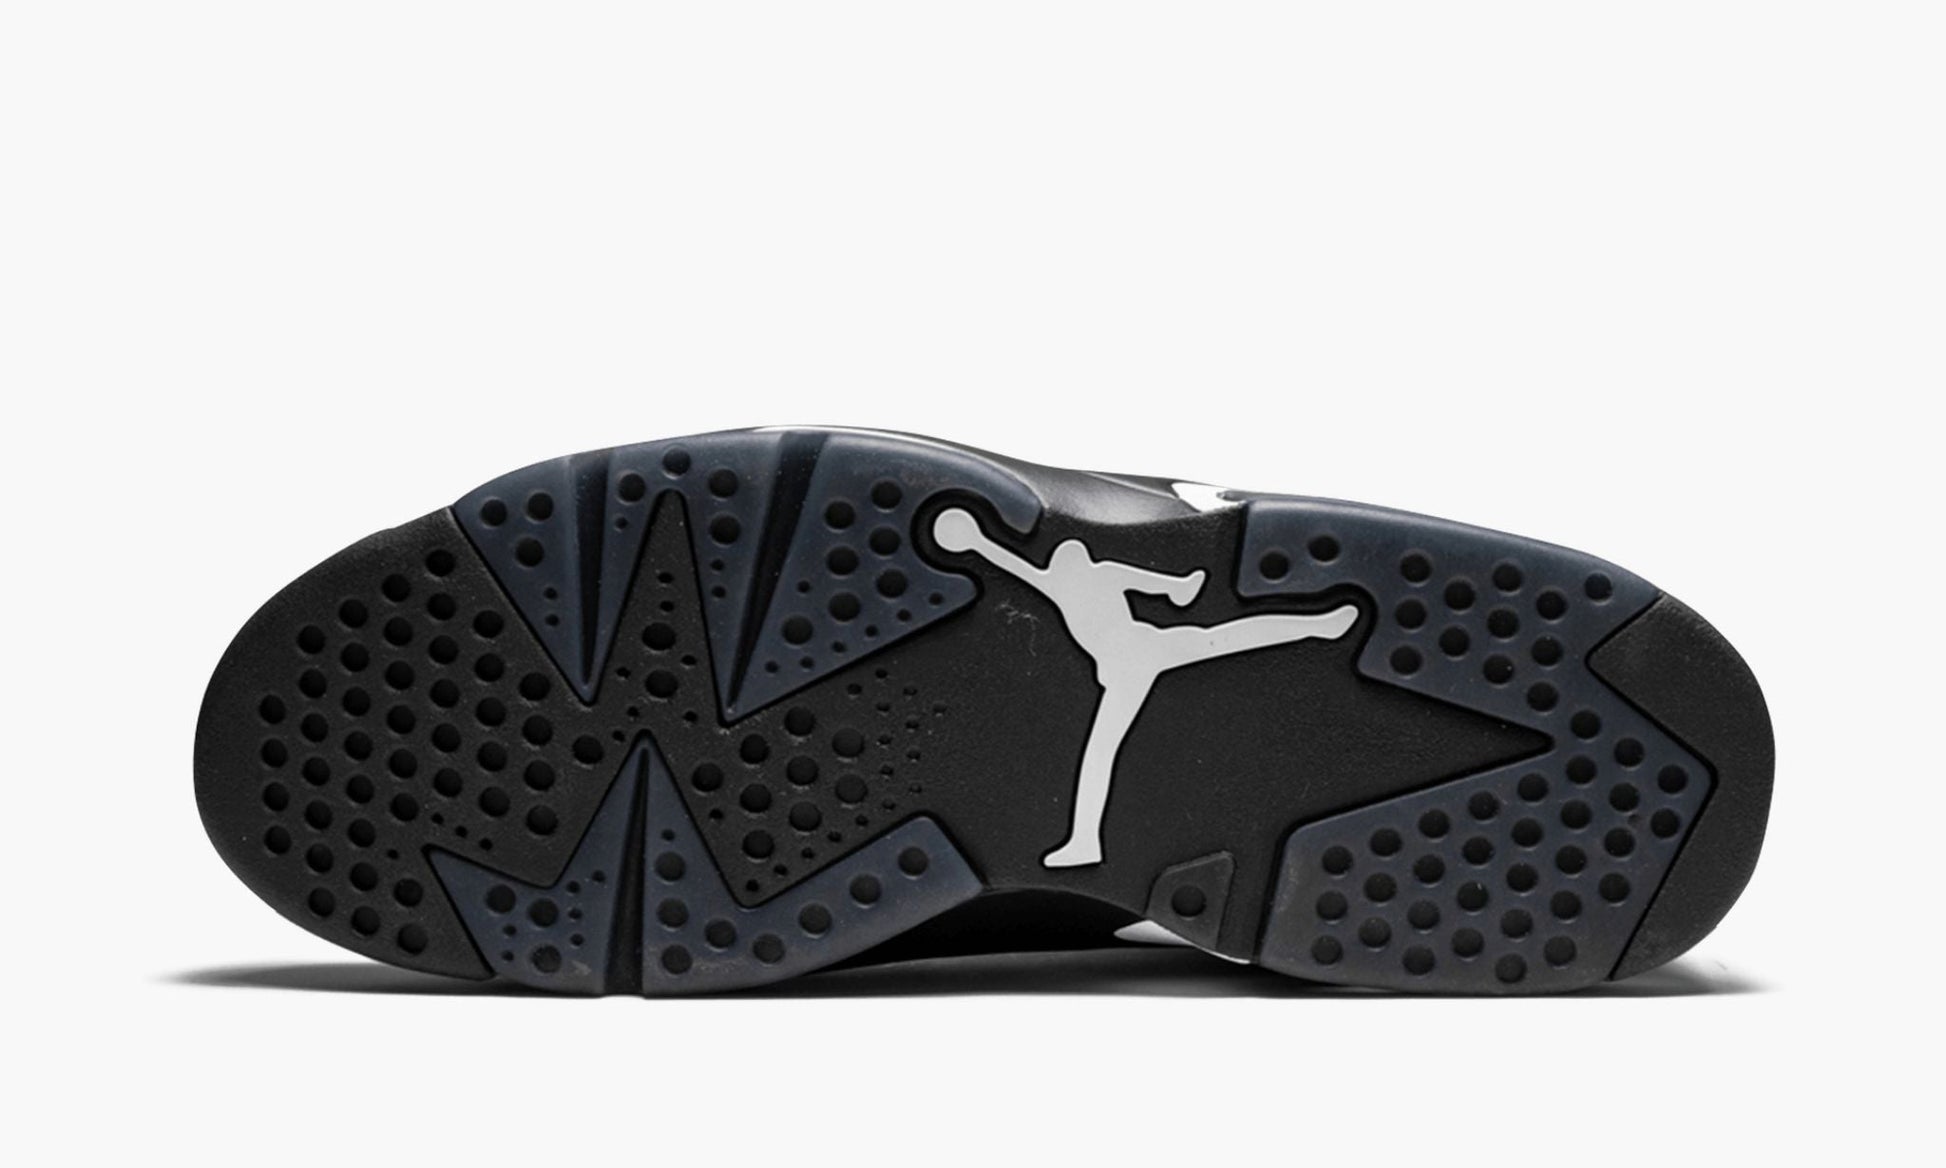 Air Jordan 6 Retro "Black Cat"